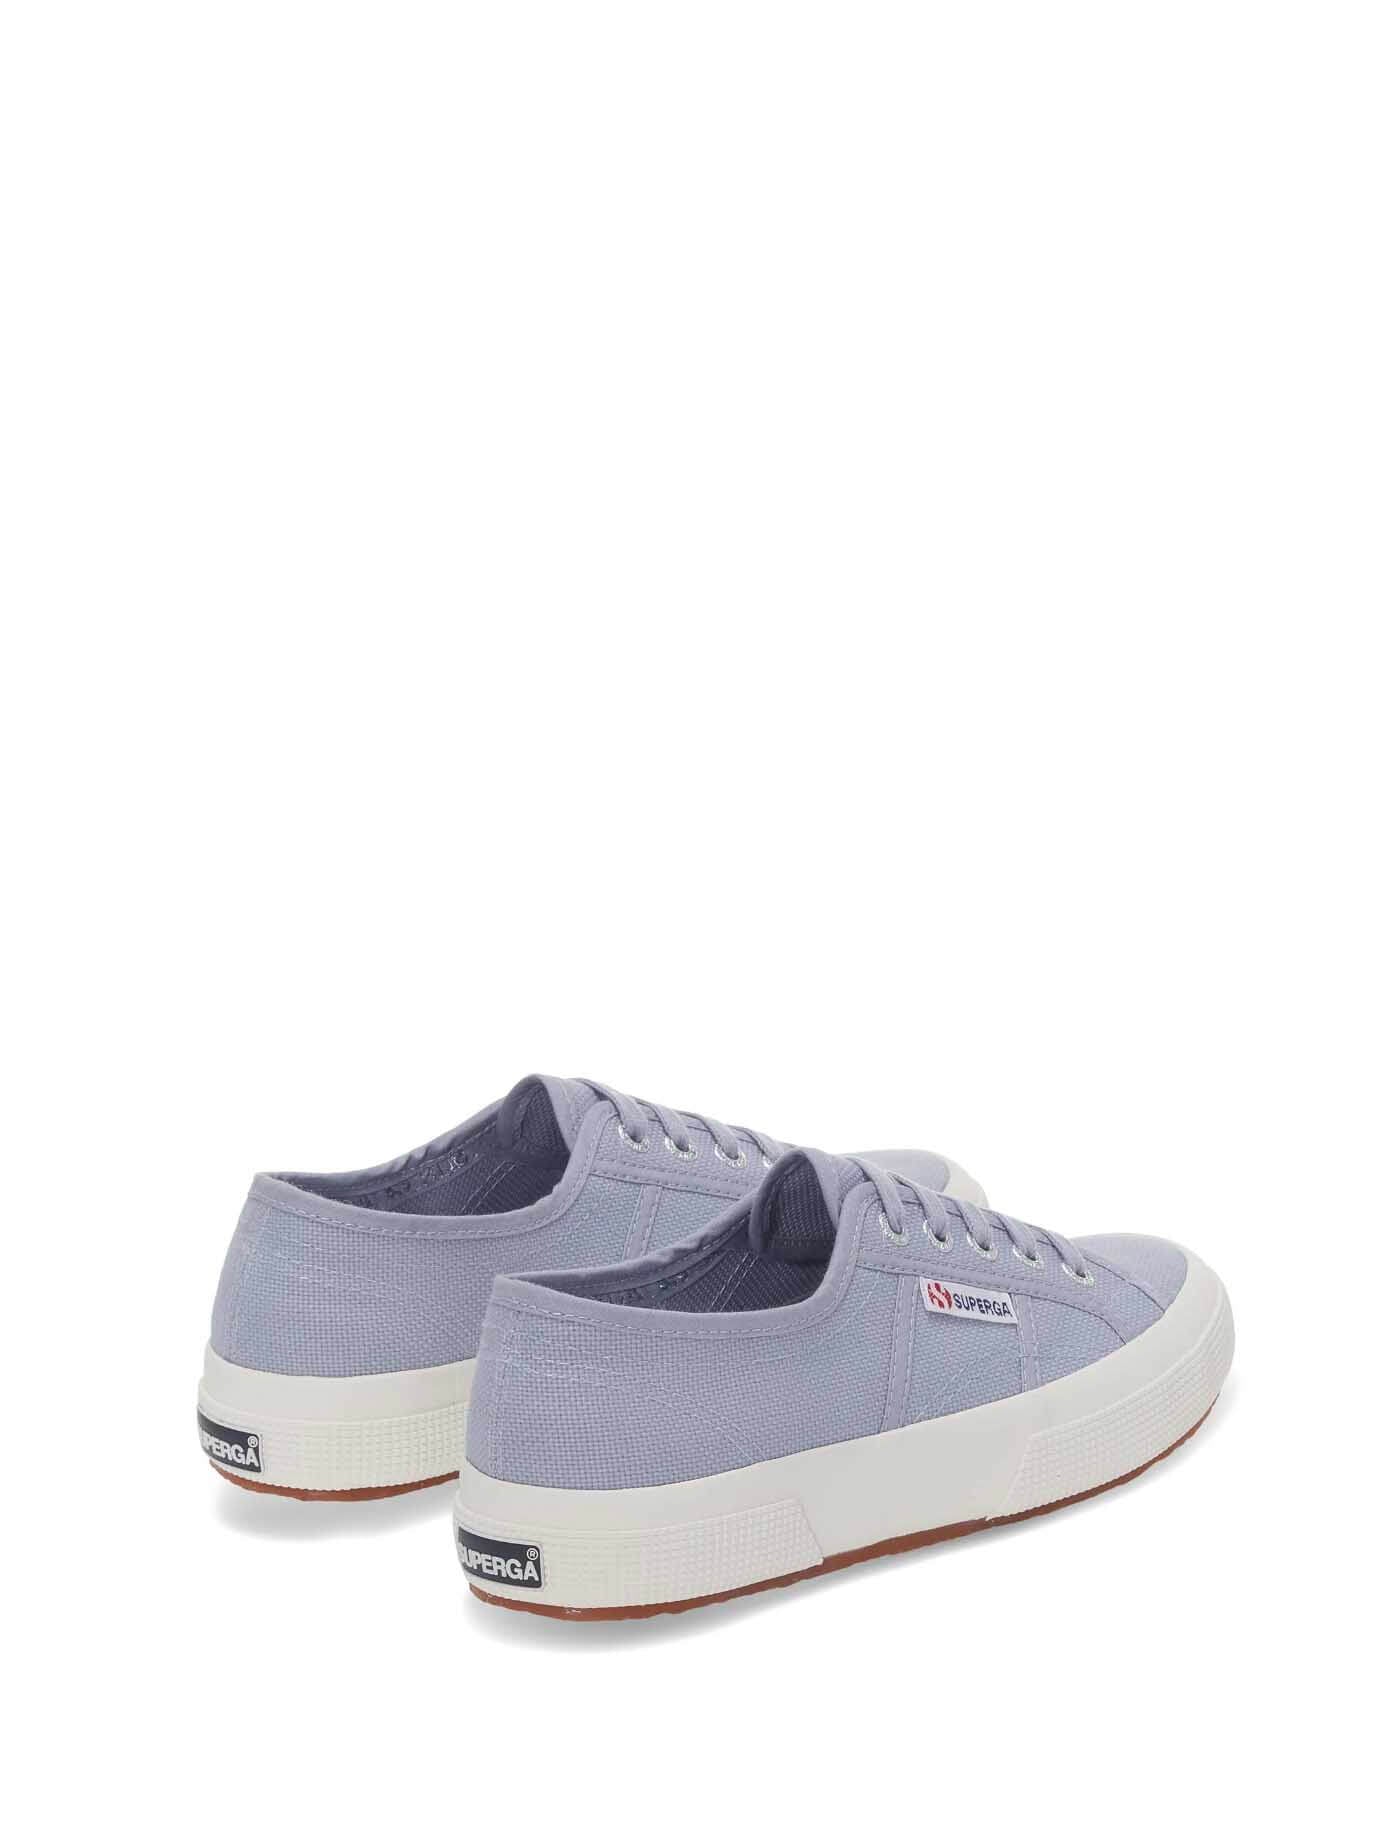 Superga 2750 Cotu Classic Sneaker in Blue/Light Grey 8058188814195